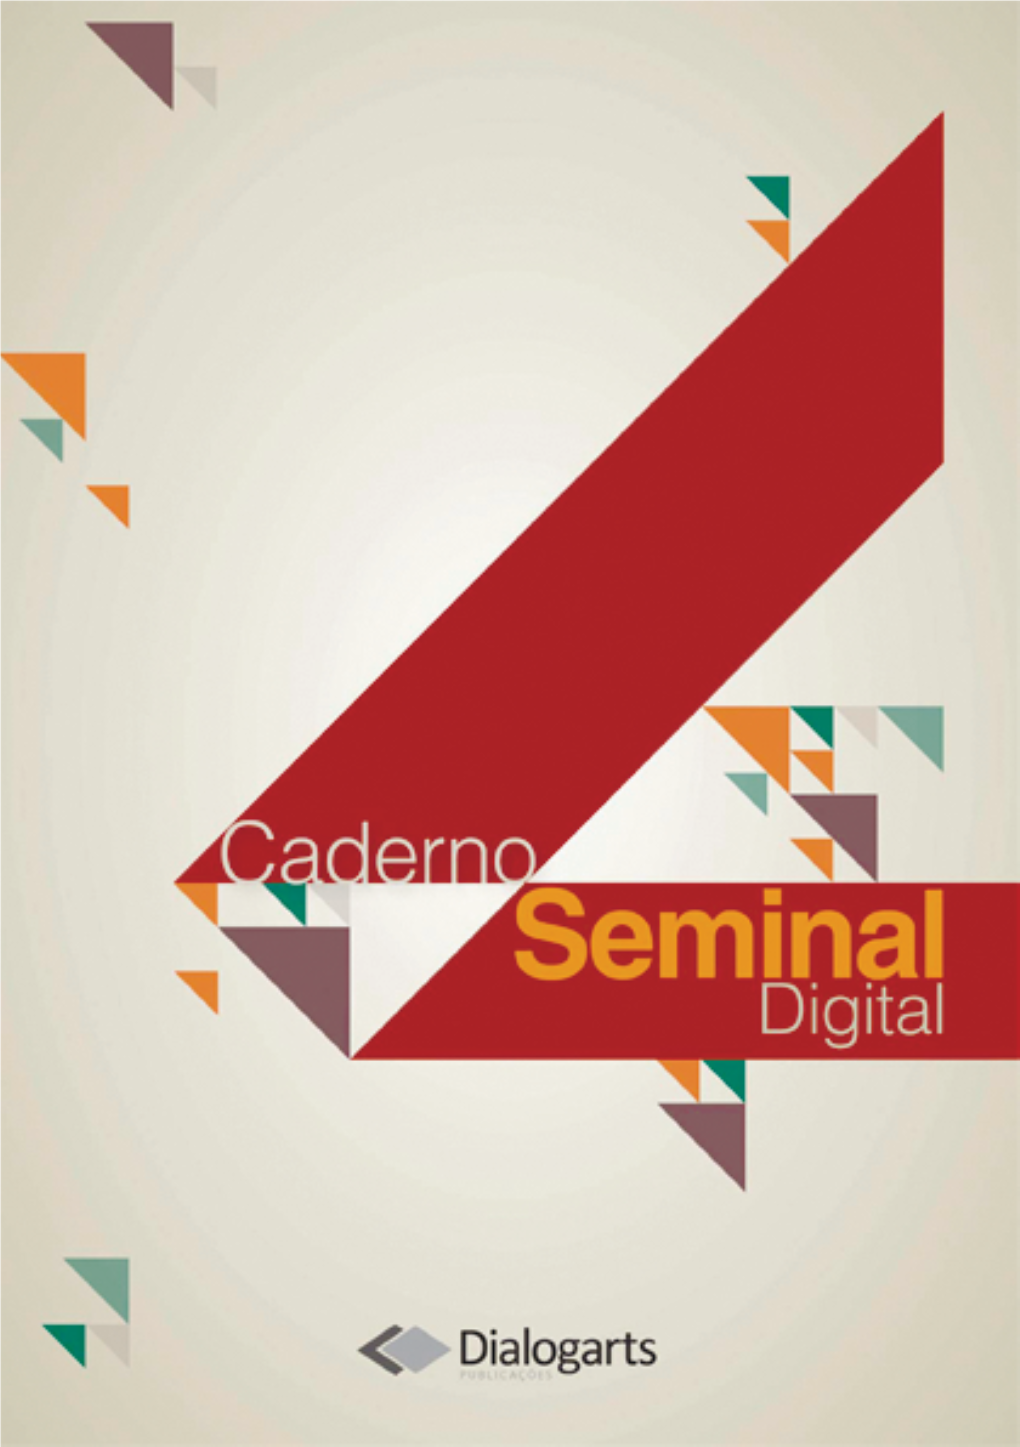 Caderno Seminal Digital